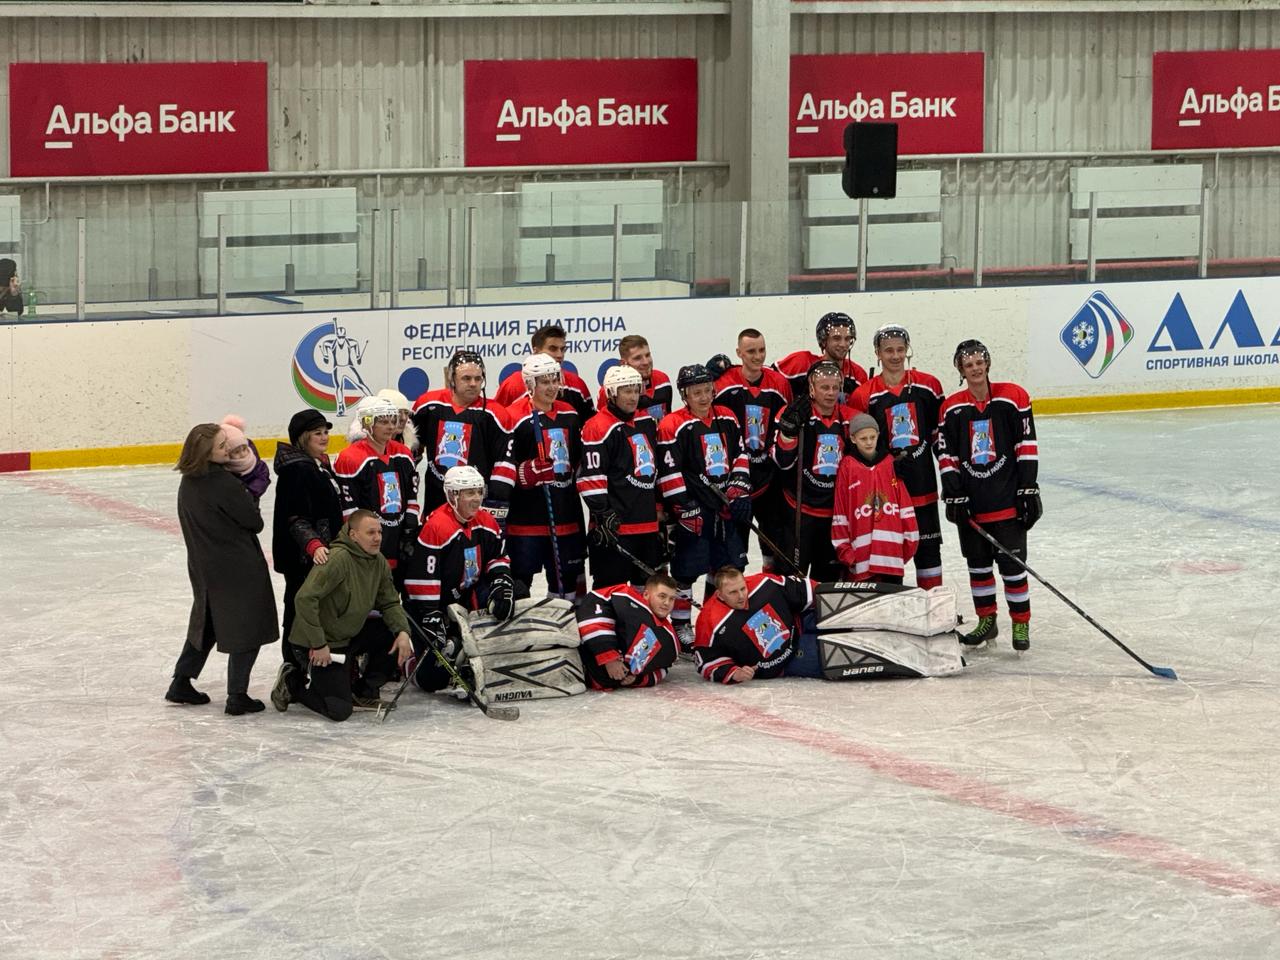 Сборные Якутска и Алдана прорываются вперед в турнире по хоккею